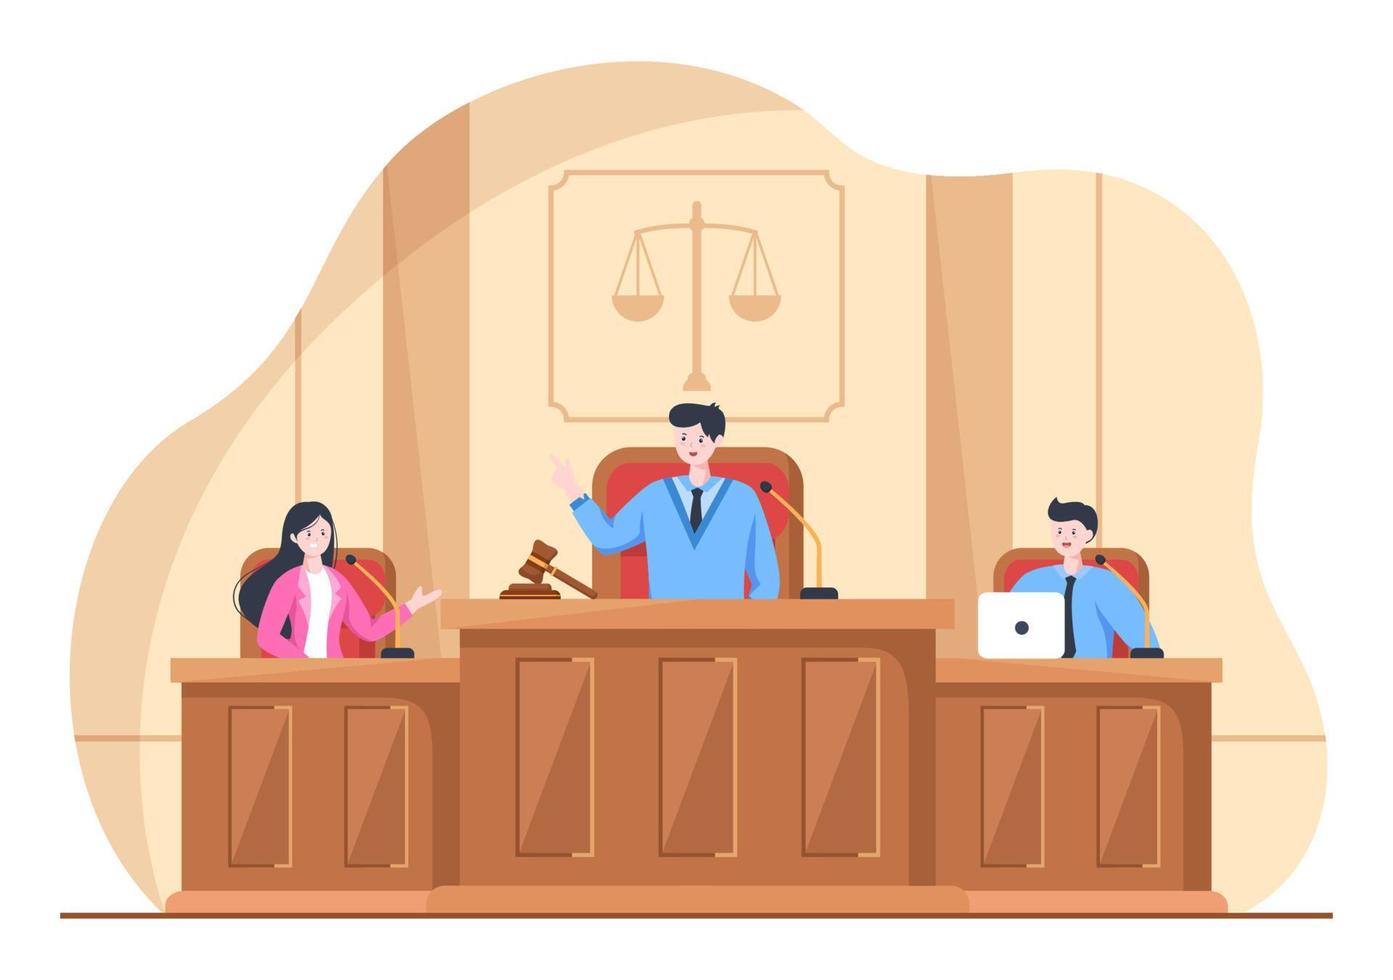 rättssal med advokat, juryrättegång, vittne eller domare och trädomarens hammare i platt tecknad designillustration vektor